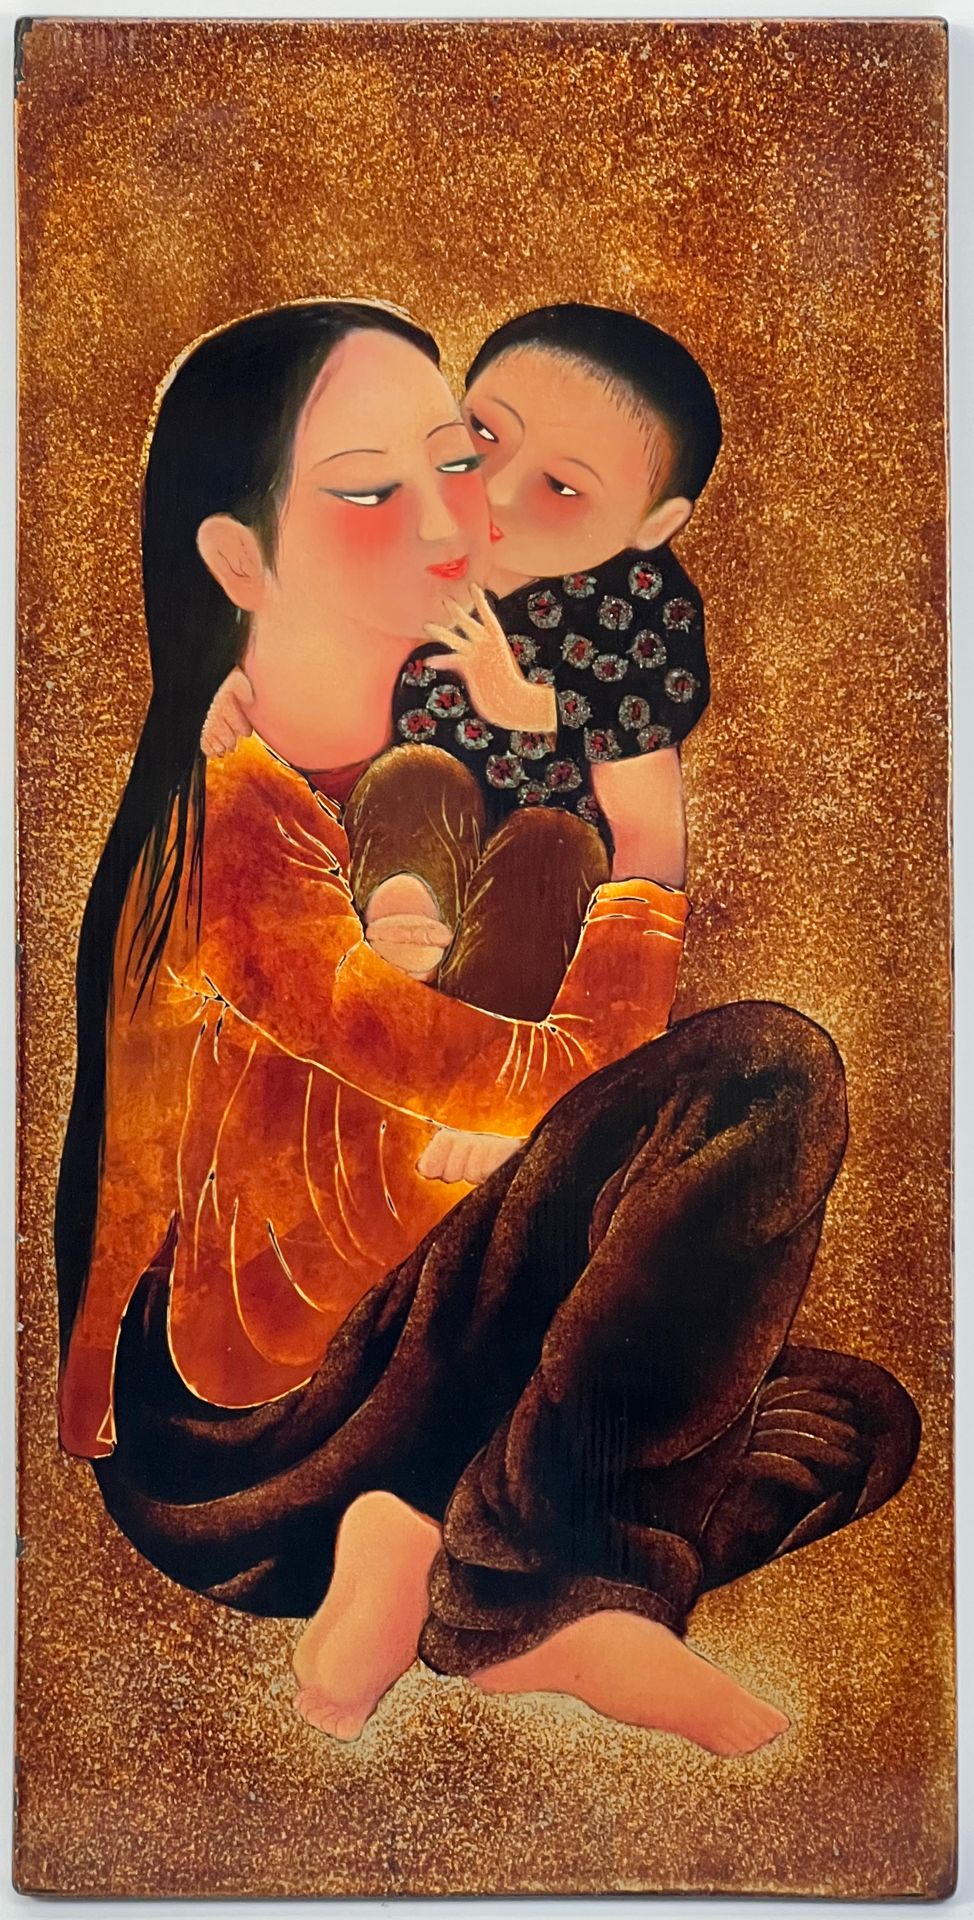 Null 河内美术学院，可能是范明-吴彦（1930-2014）。

孕妇。

木材上的多色和金漆。

H.高度：40厘米

长：30厘米